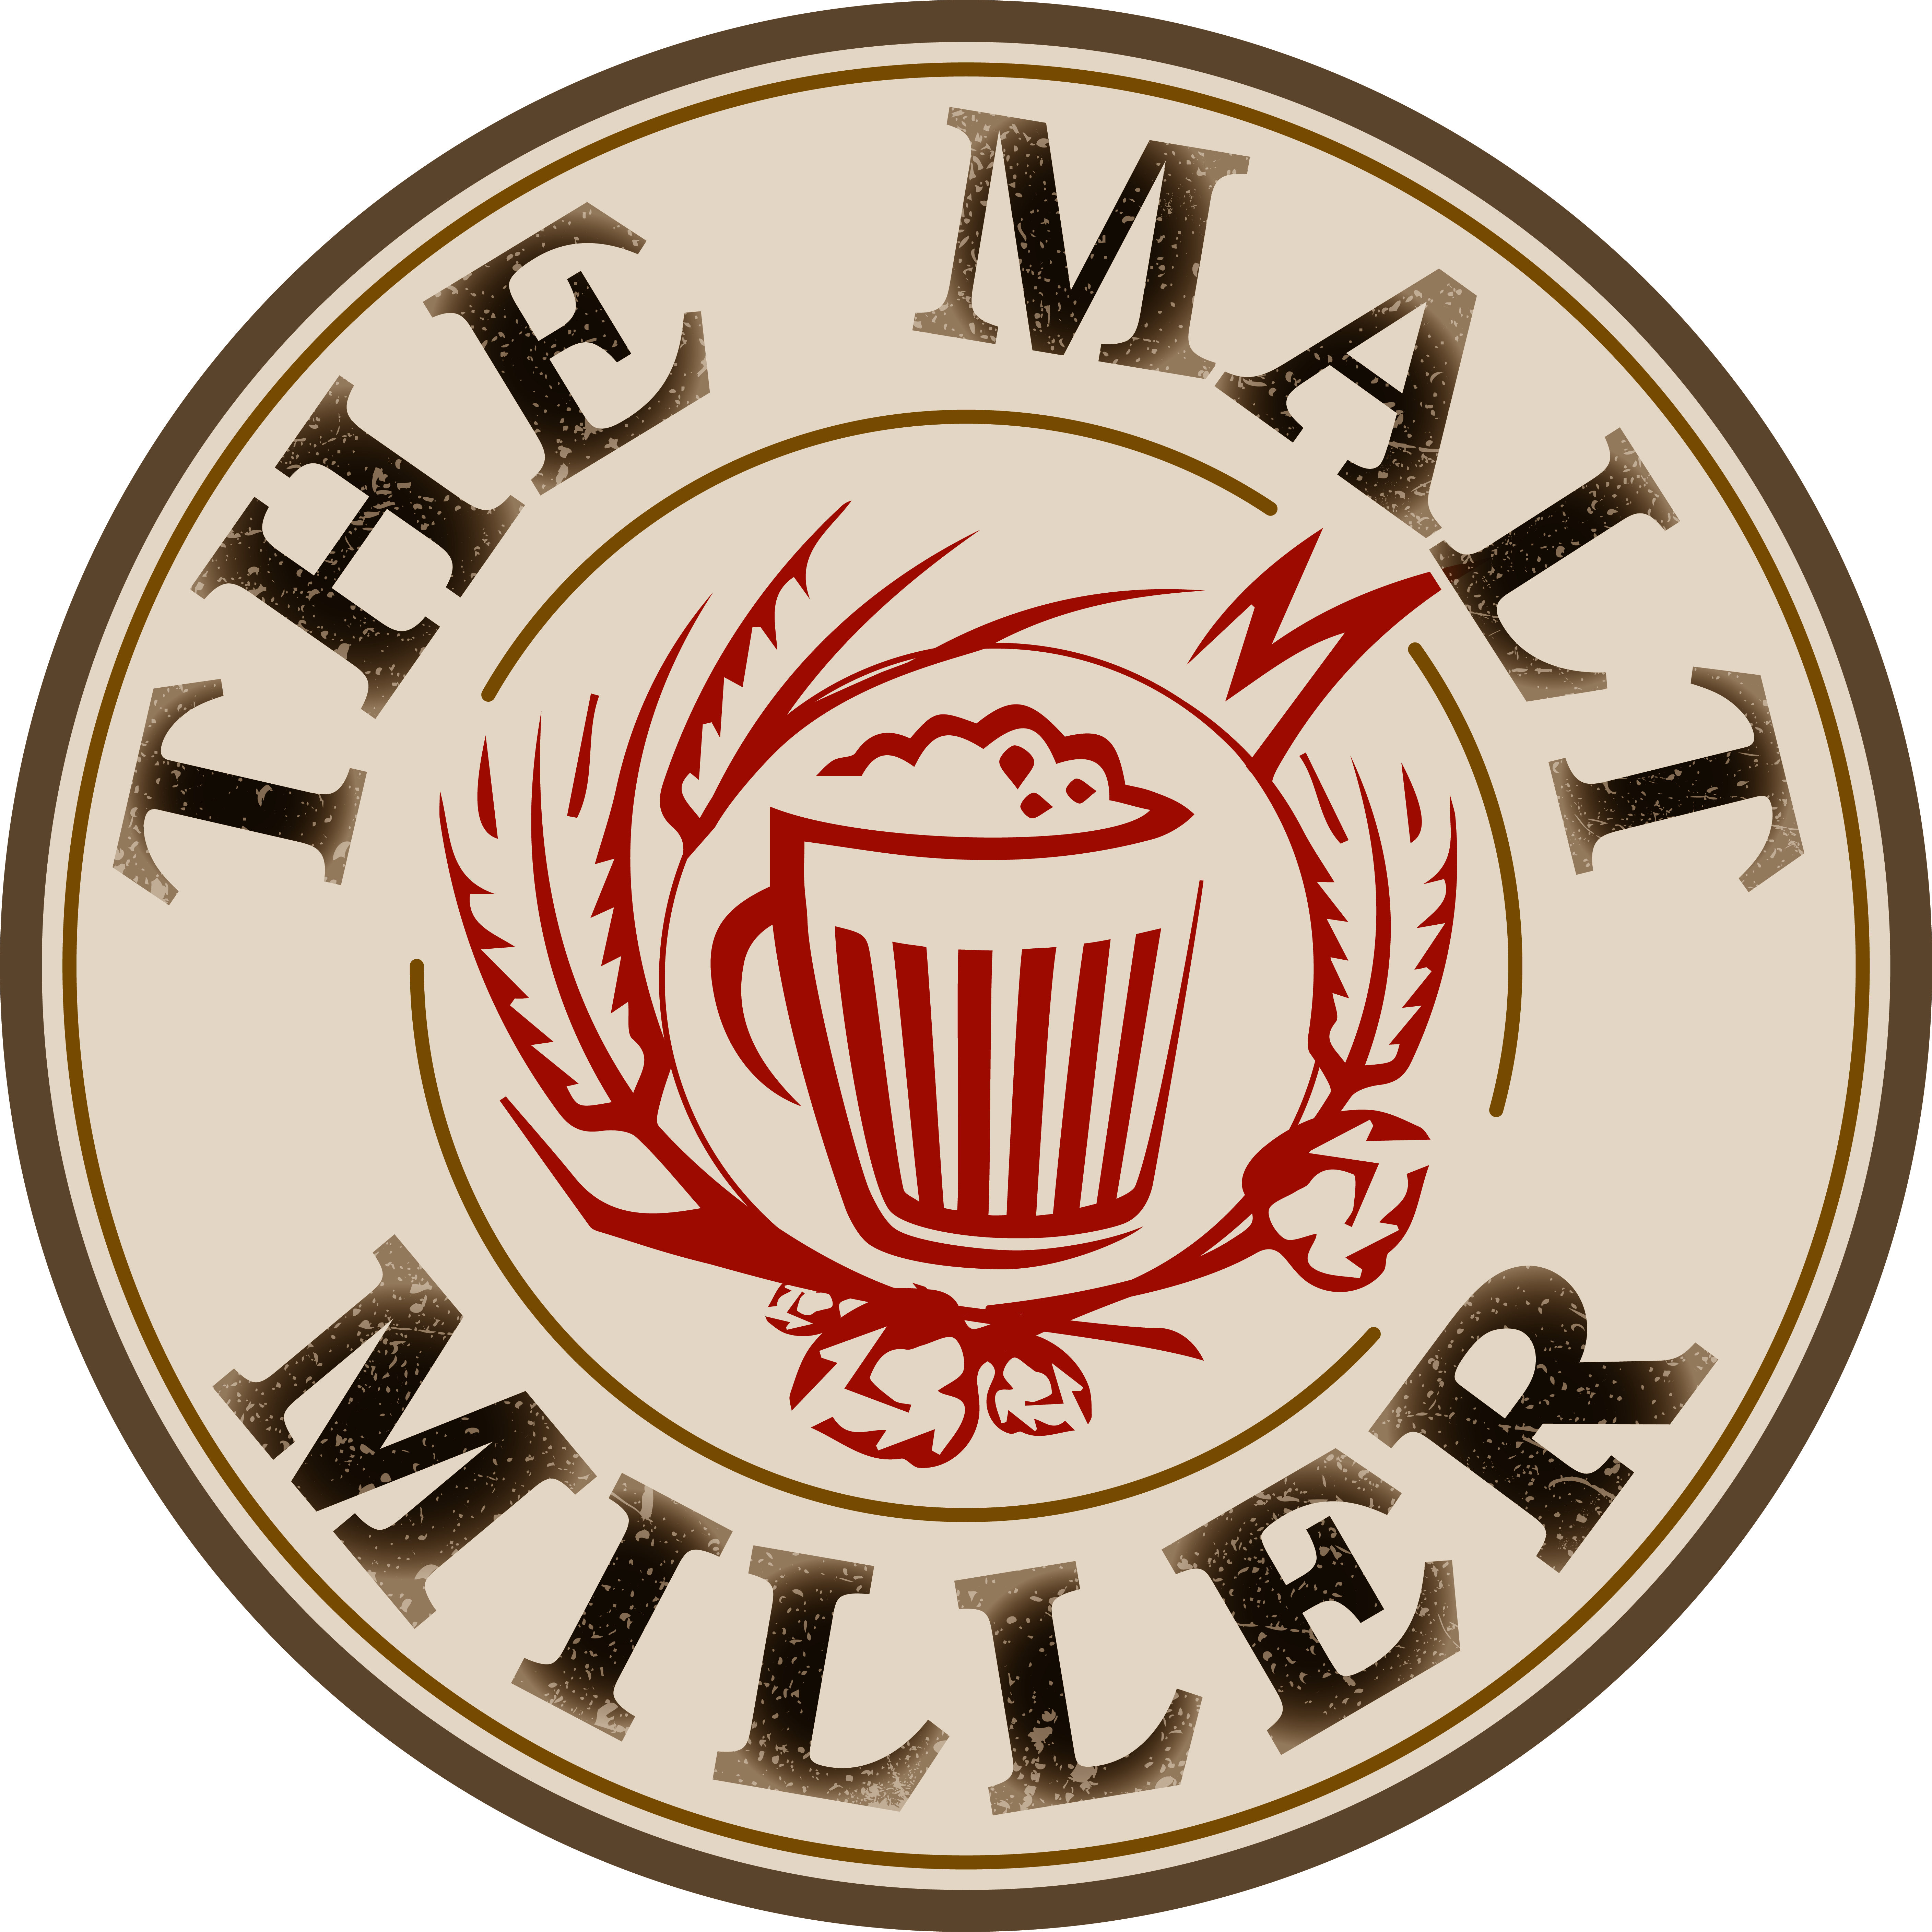 Malt Miller